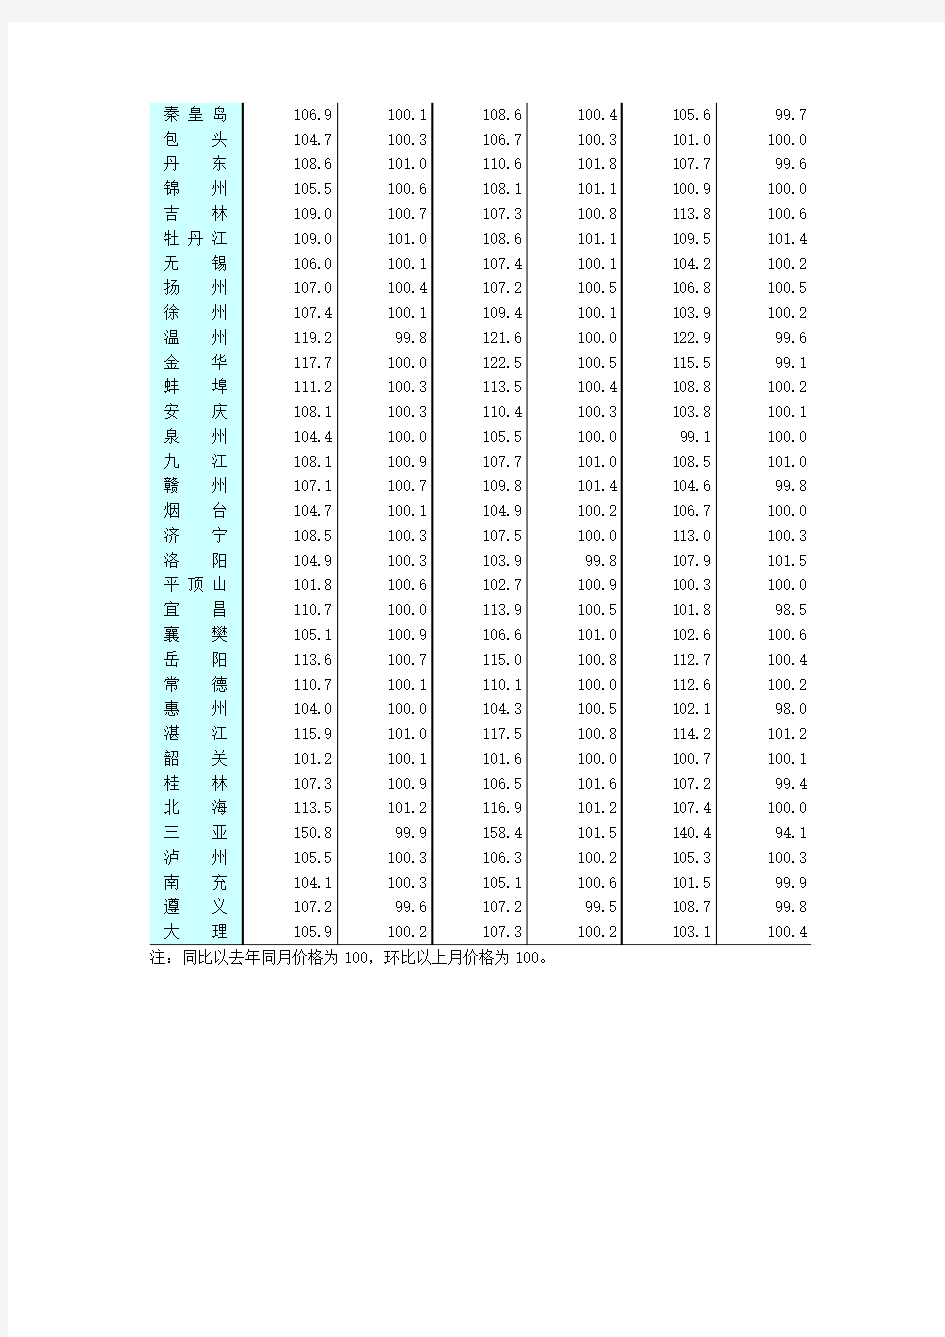 《全国七十个大中城市房屋销售价格指数》(2010年5月)